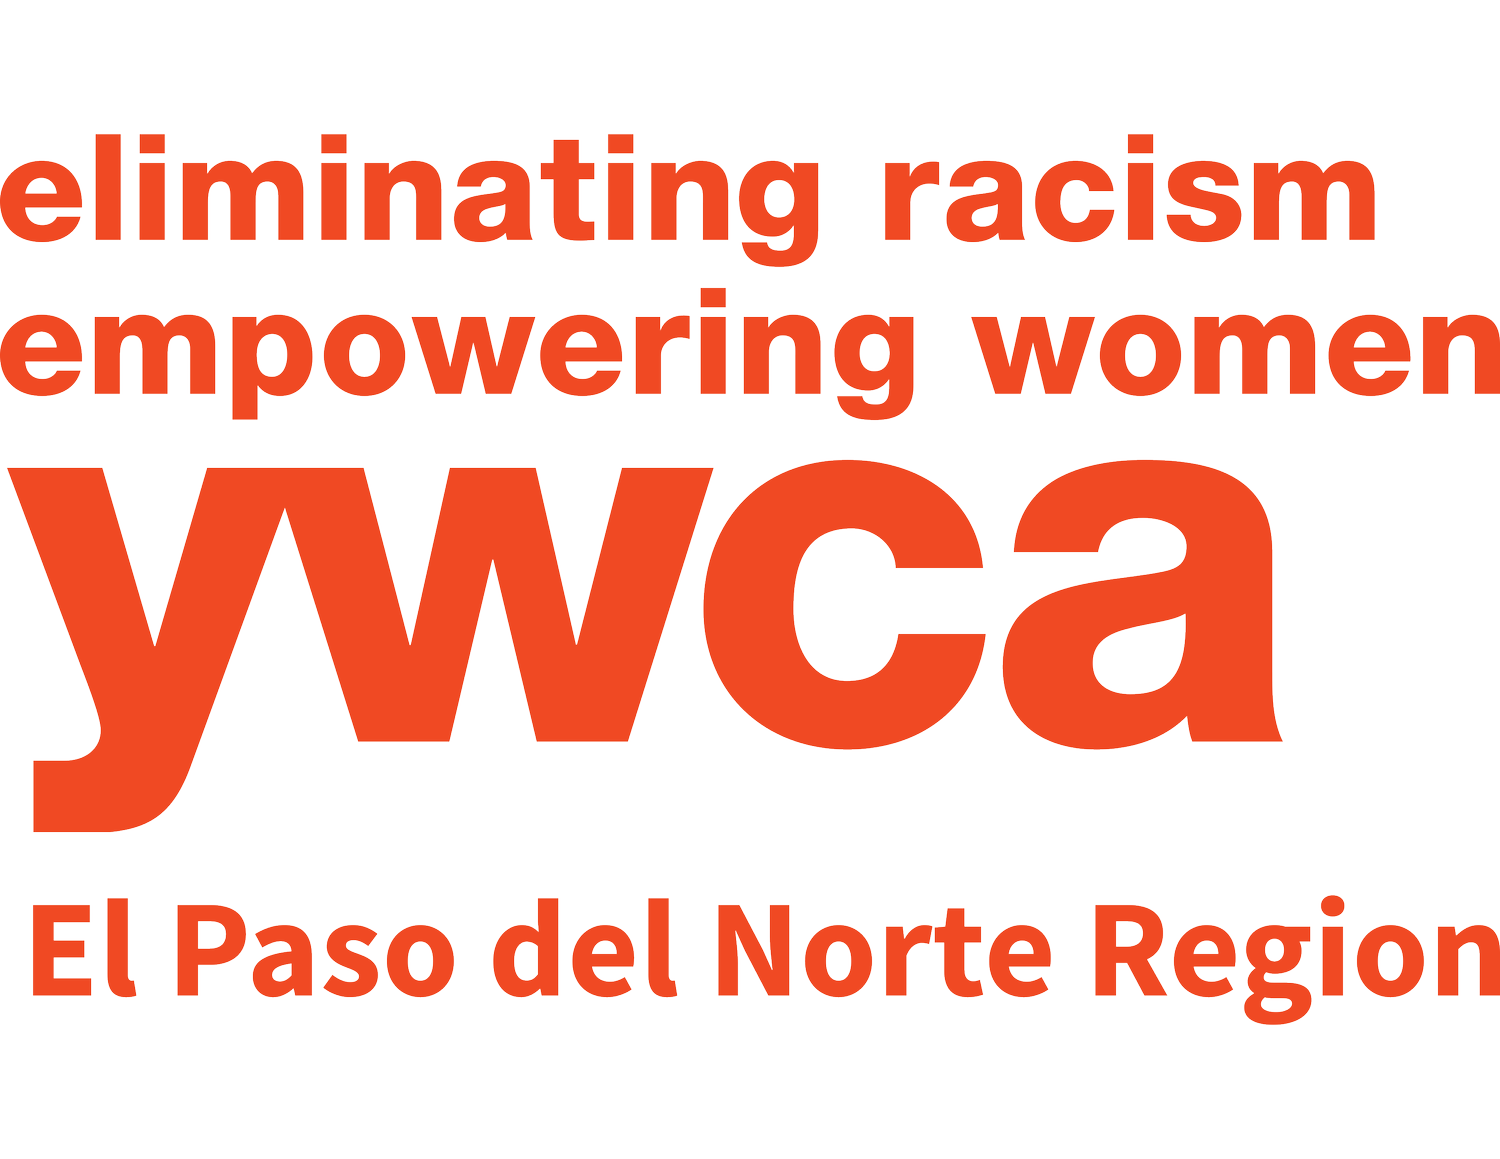 YWCA El Paso